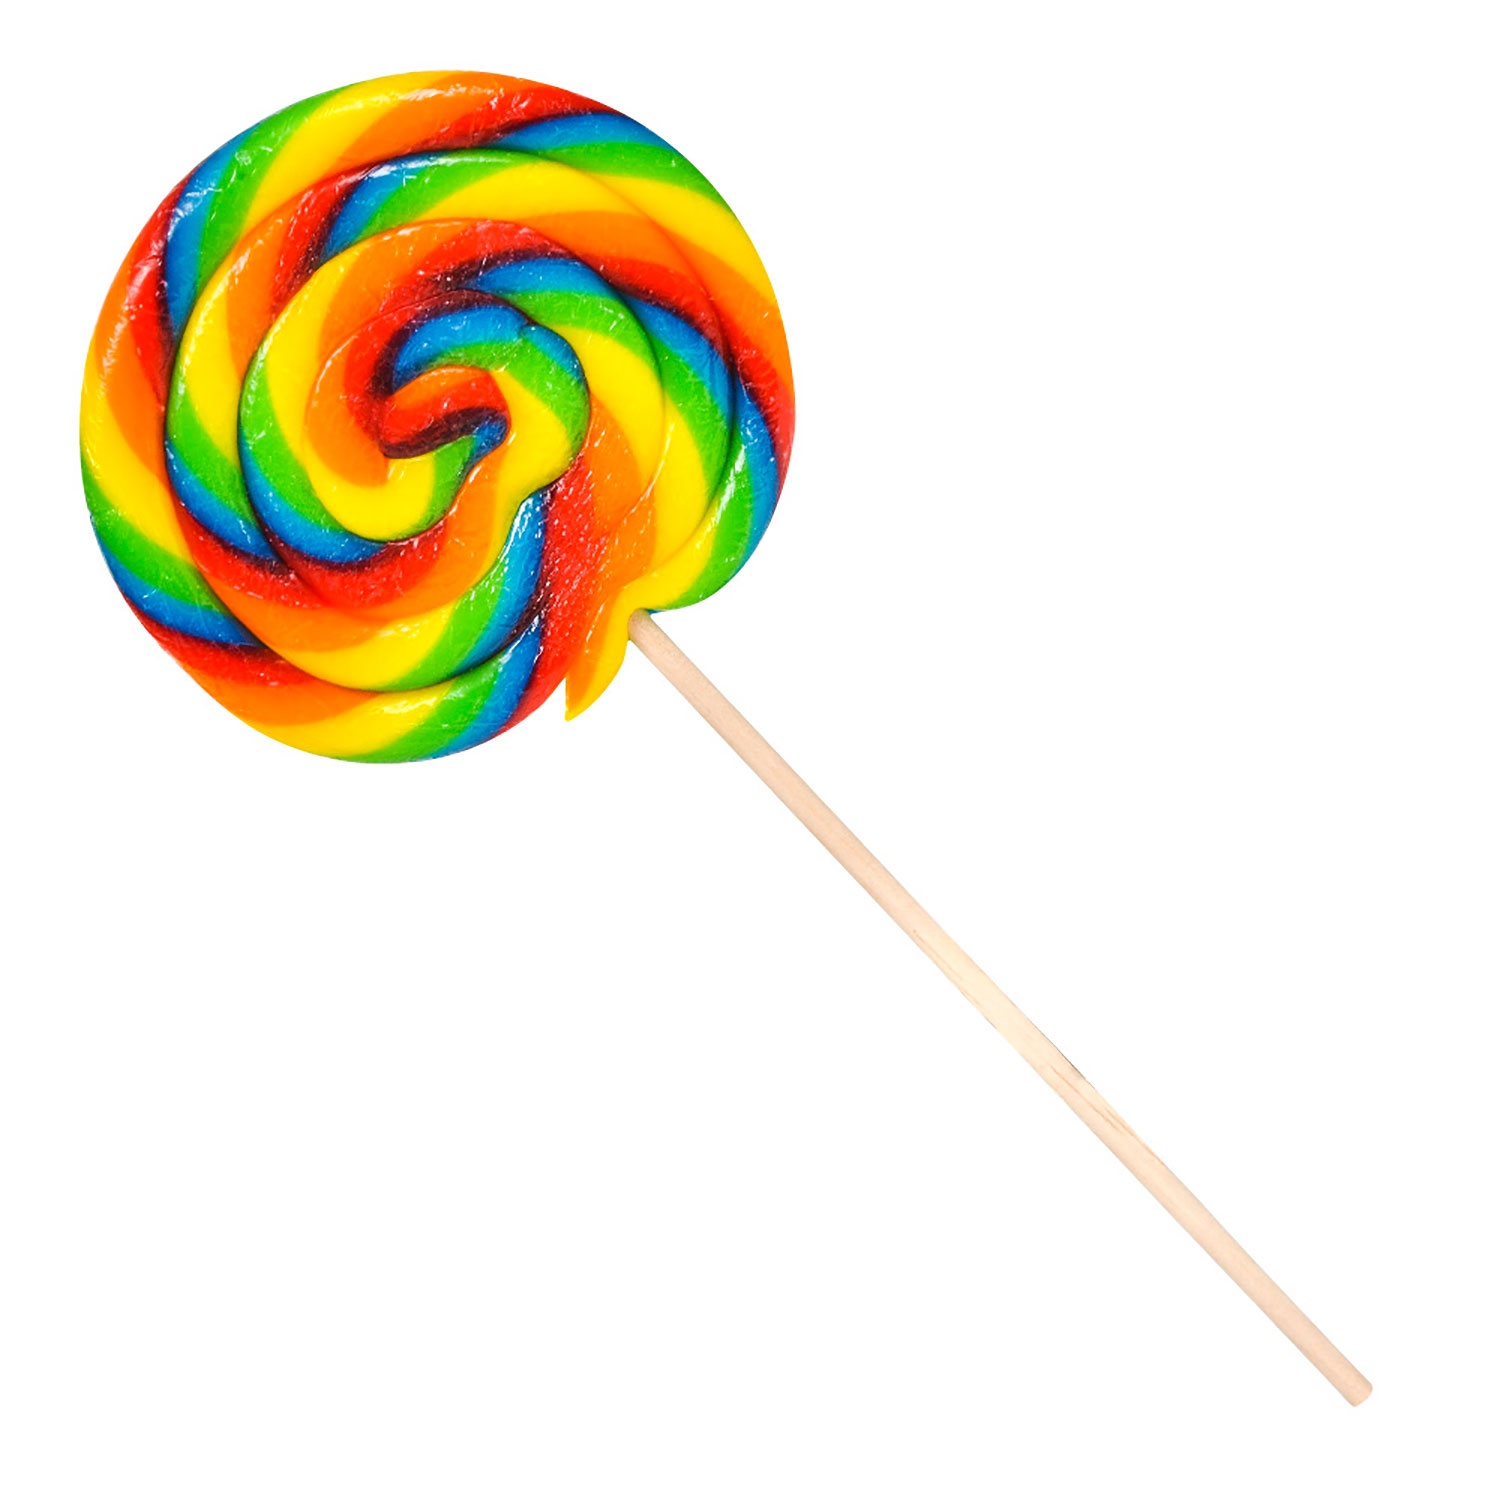 small multi colored swirled lollipops